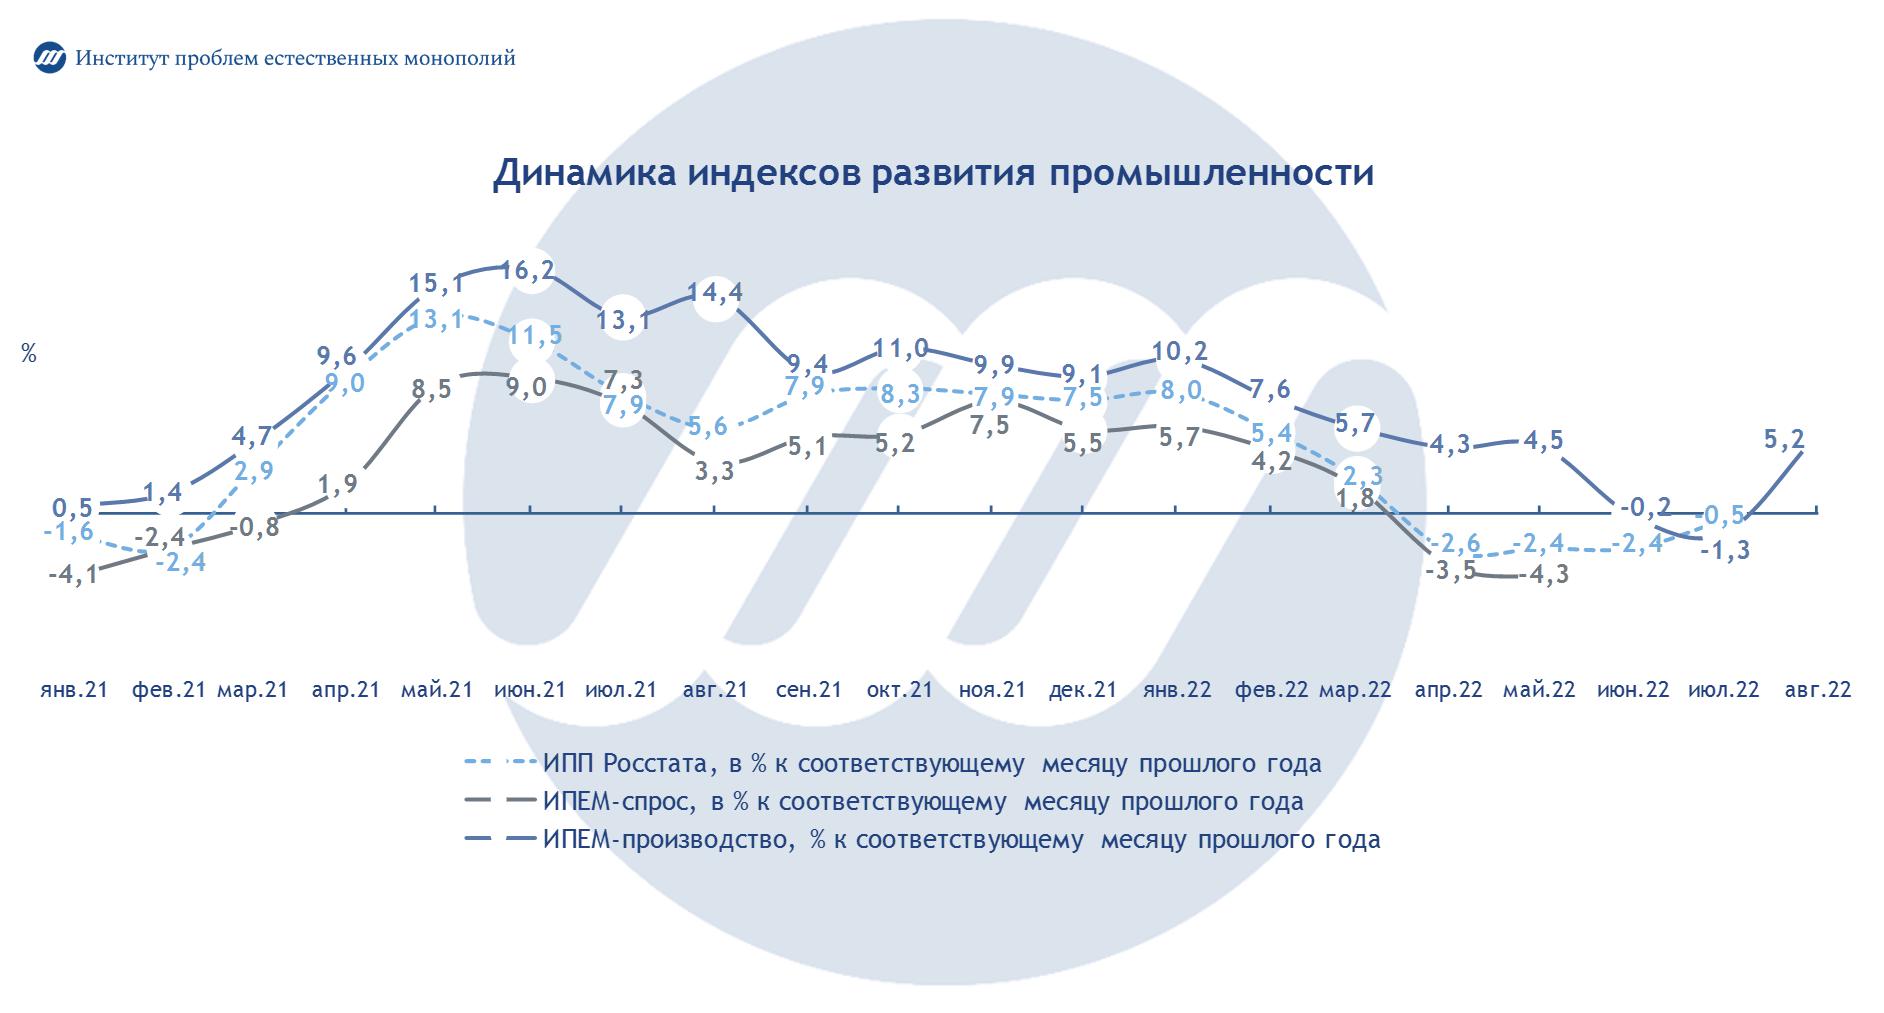 Промышленность России: итоги августа 2022 года